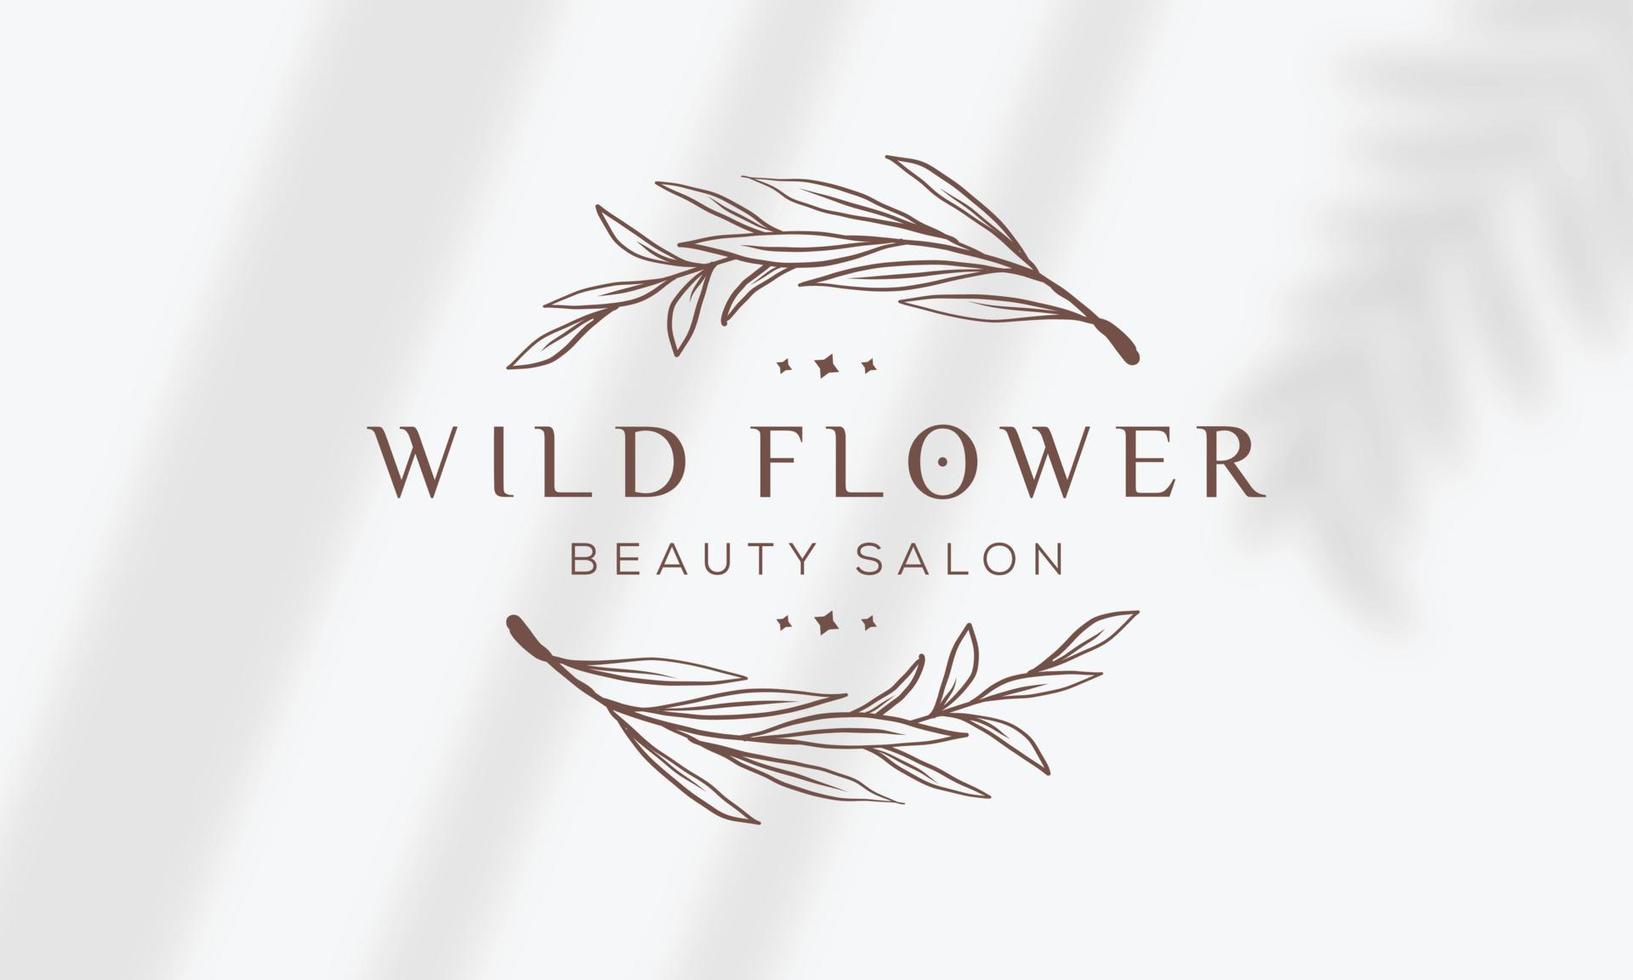 logo dessiné à la main d'élément floral botanique avec fleur et feuilles sauvages. logo pour spa et salon de beauté, boutique, magasin bio, mariage, designer floral, intérieur, photographie, cosmétique. vecteur